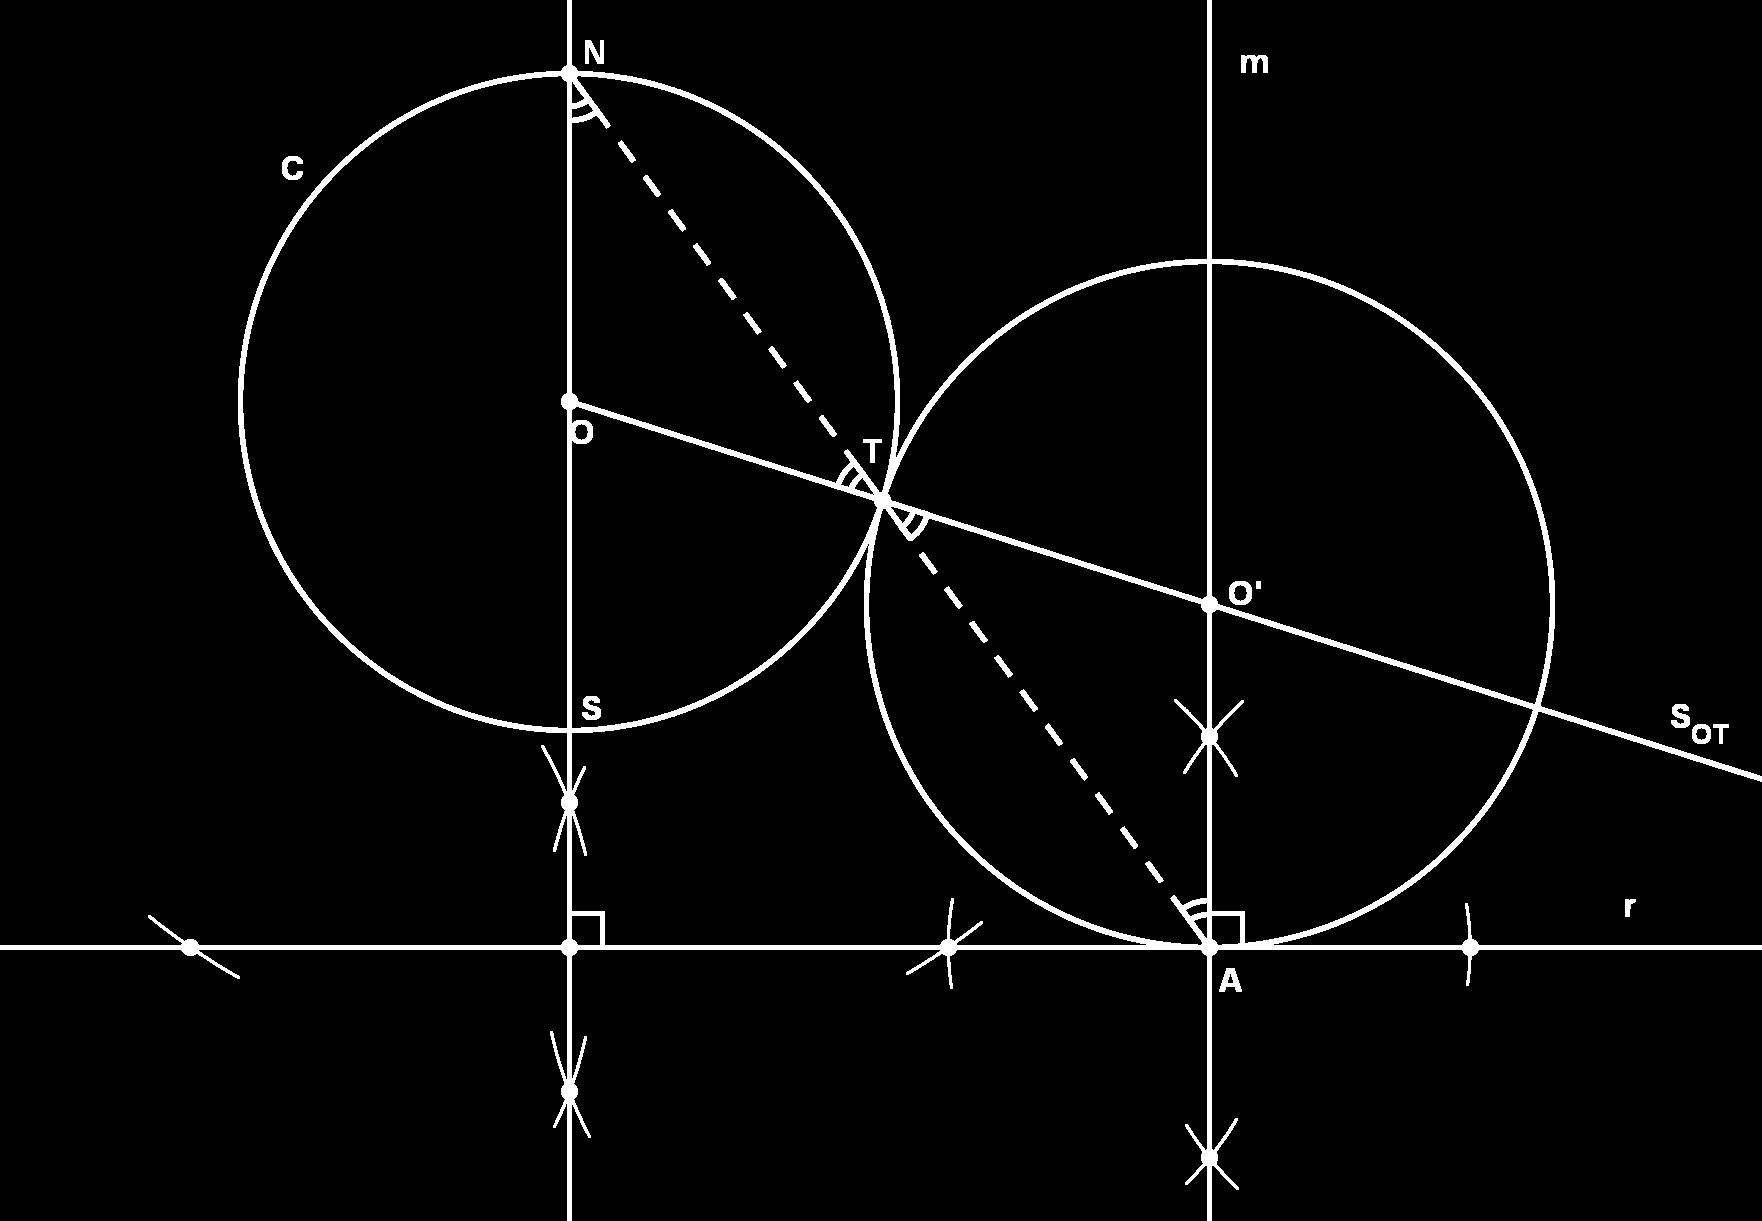 Construções Elementares 2. Trace a reta NA e considere T o ponto de interseção com C. 3. Trace a perpendicular m a r passando por A. 4. Trace a semi-reta S OT.